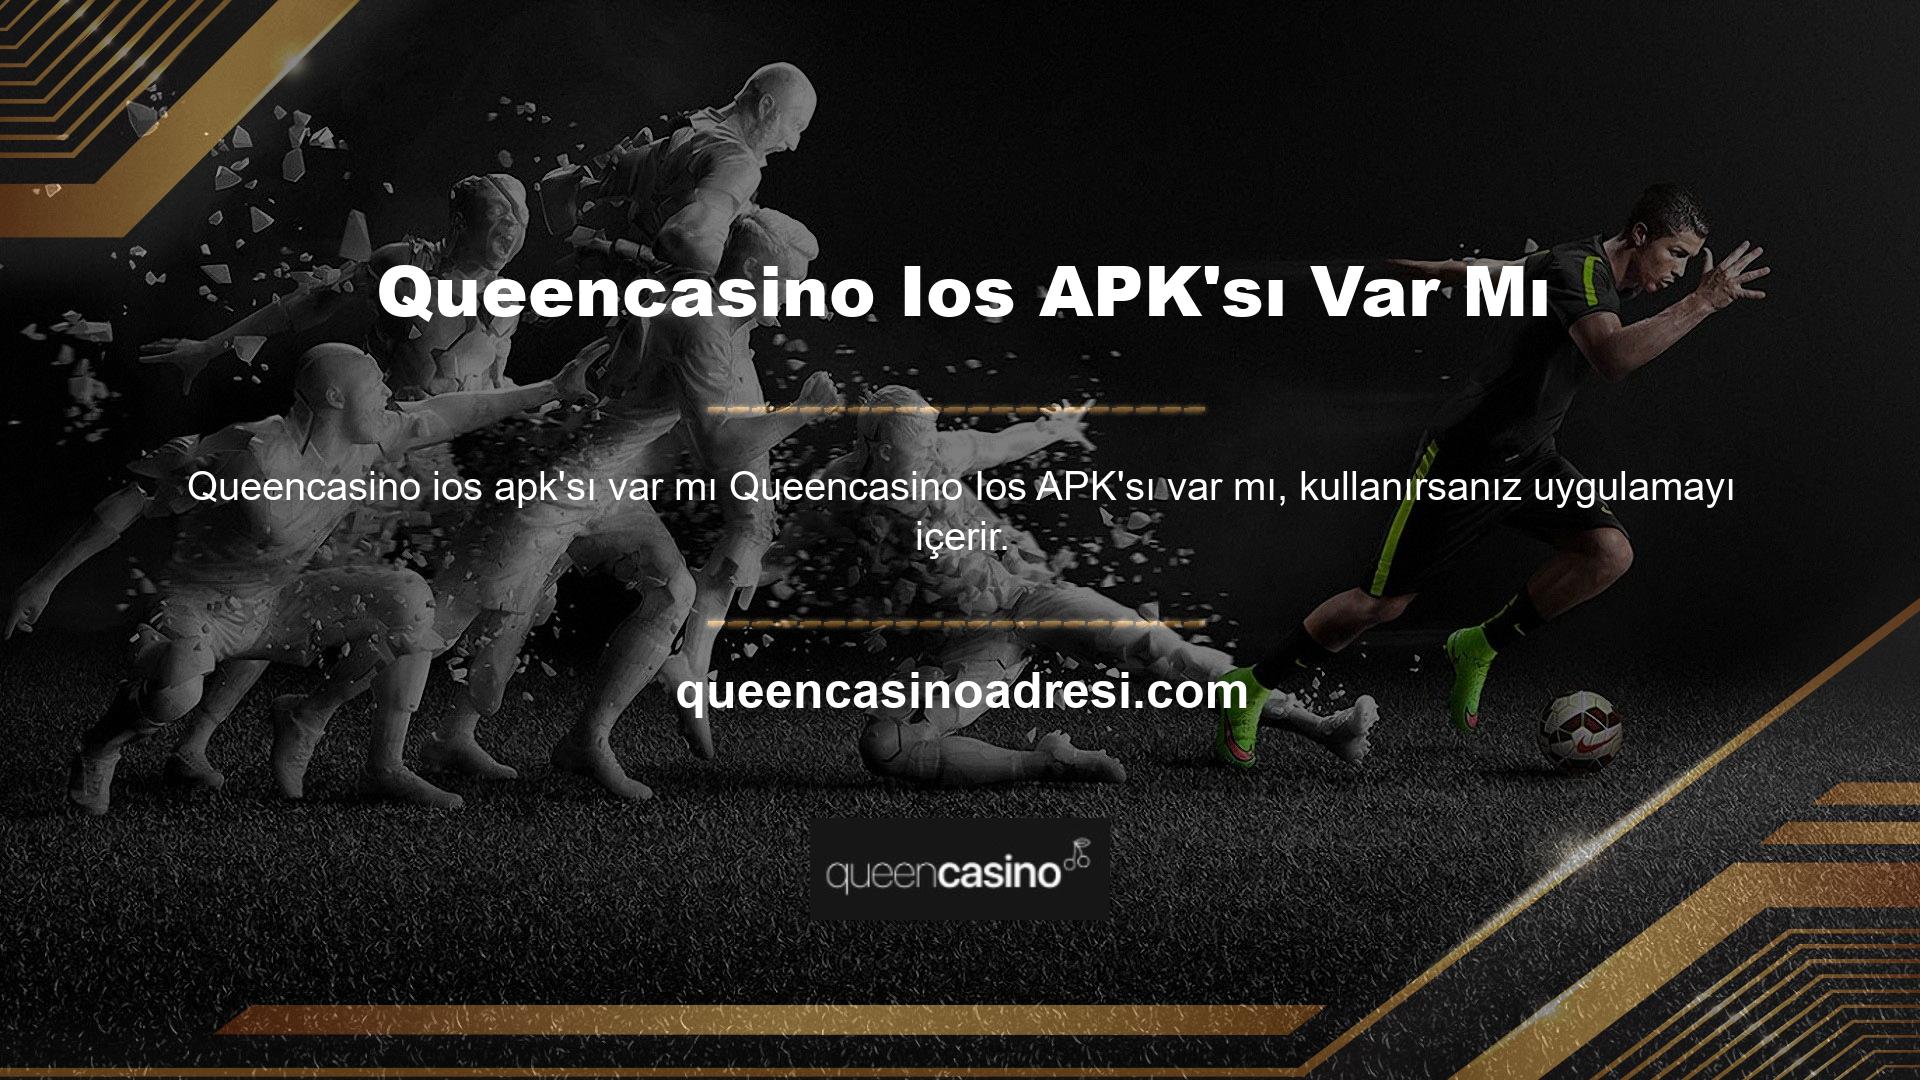 Queencasino ios APK web sitesinden ücretsiz olarak edinilebilir